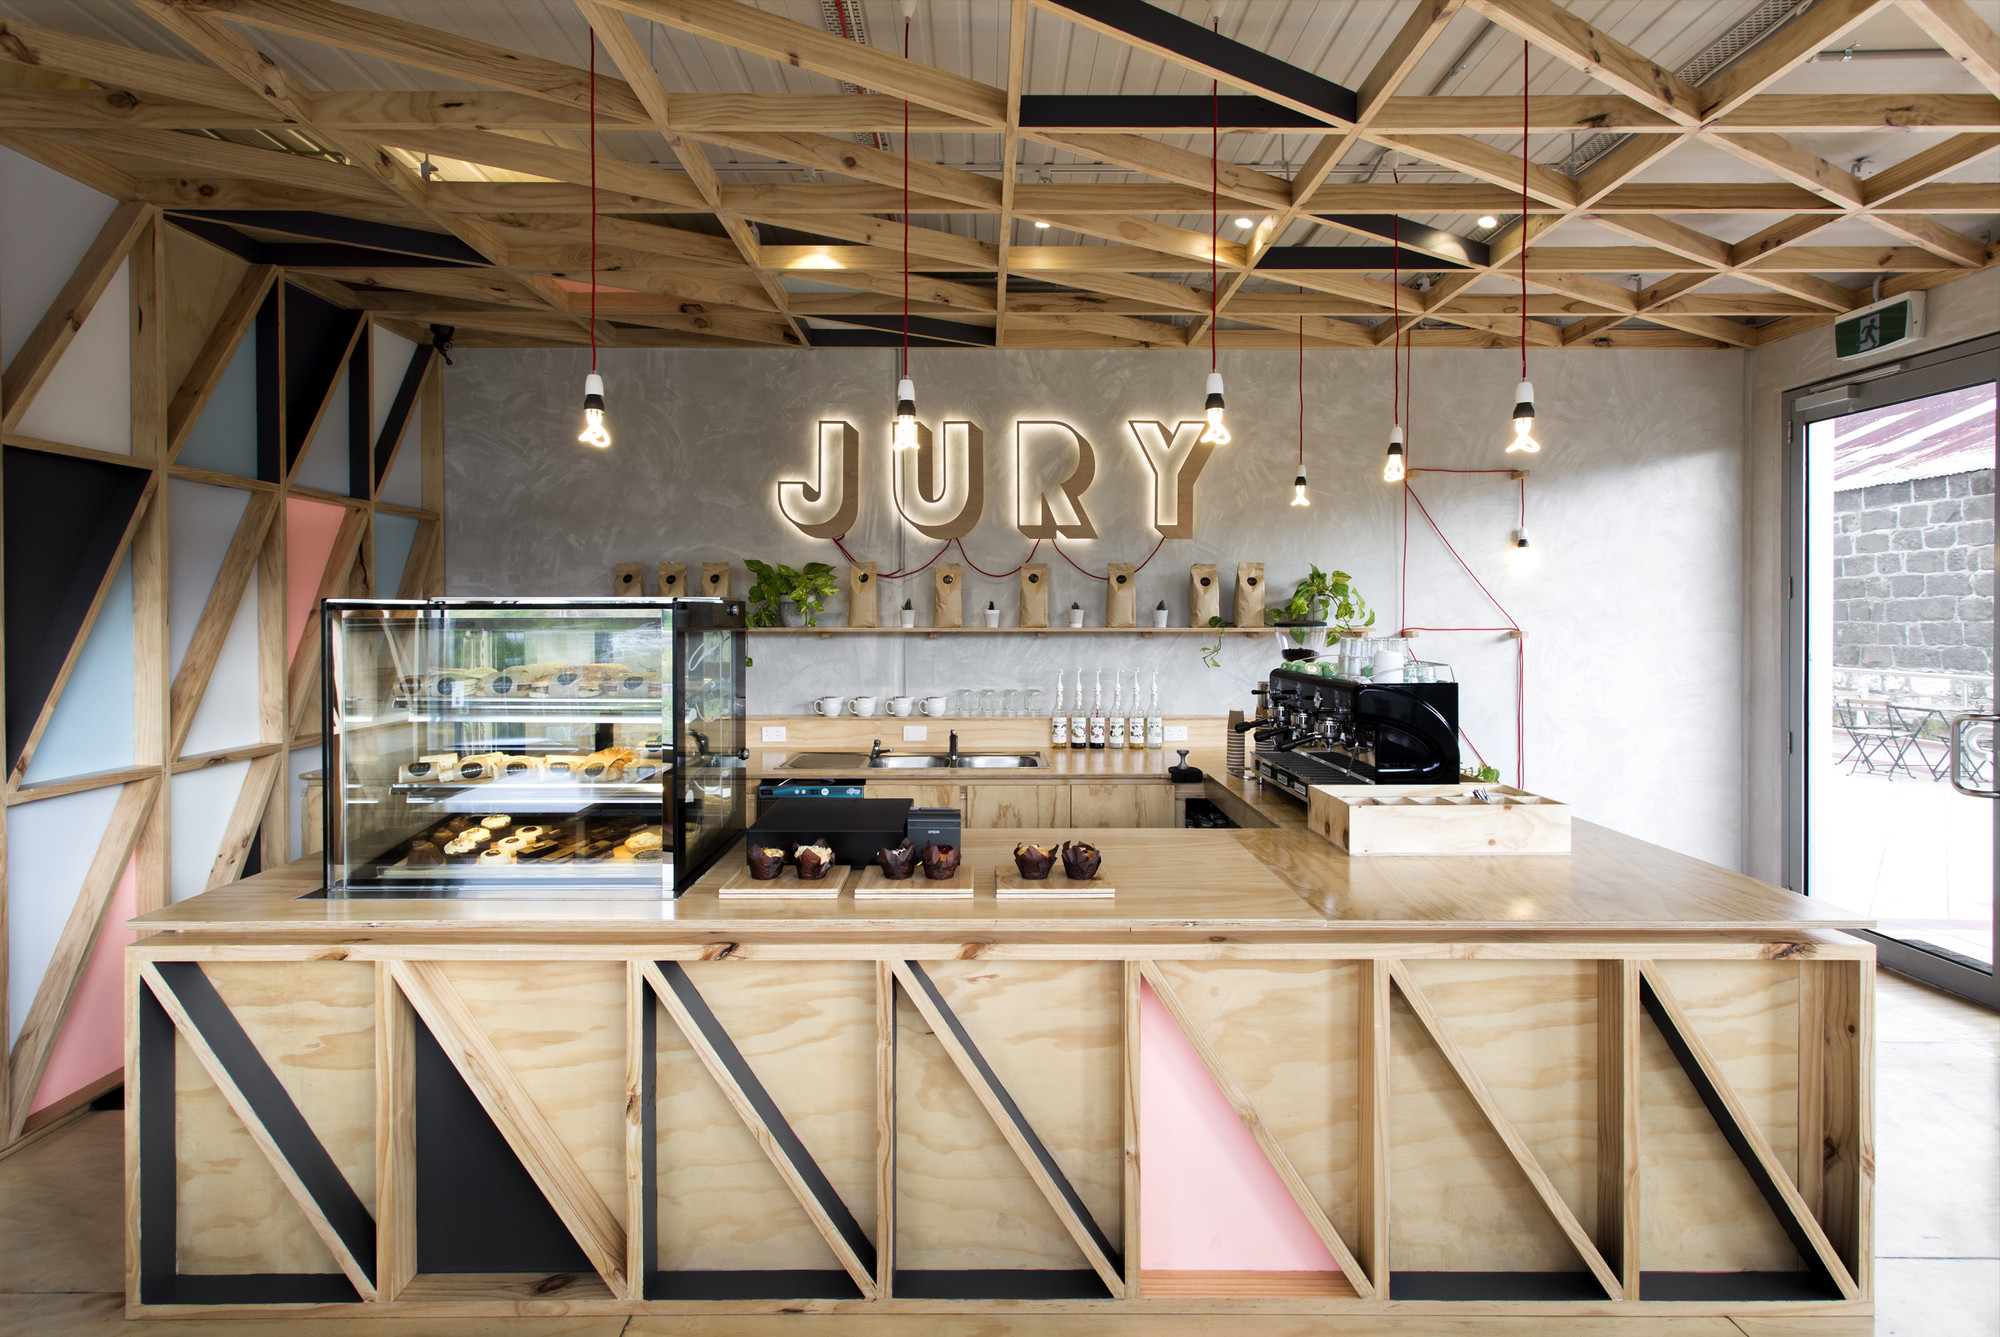 biasol jury 004 Jury / Biasol: Design Studio